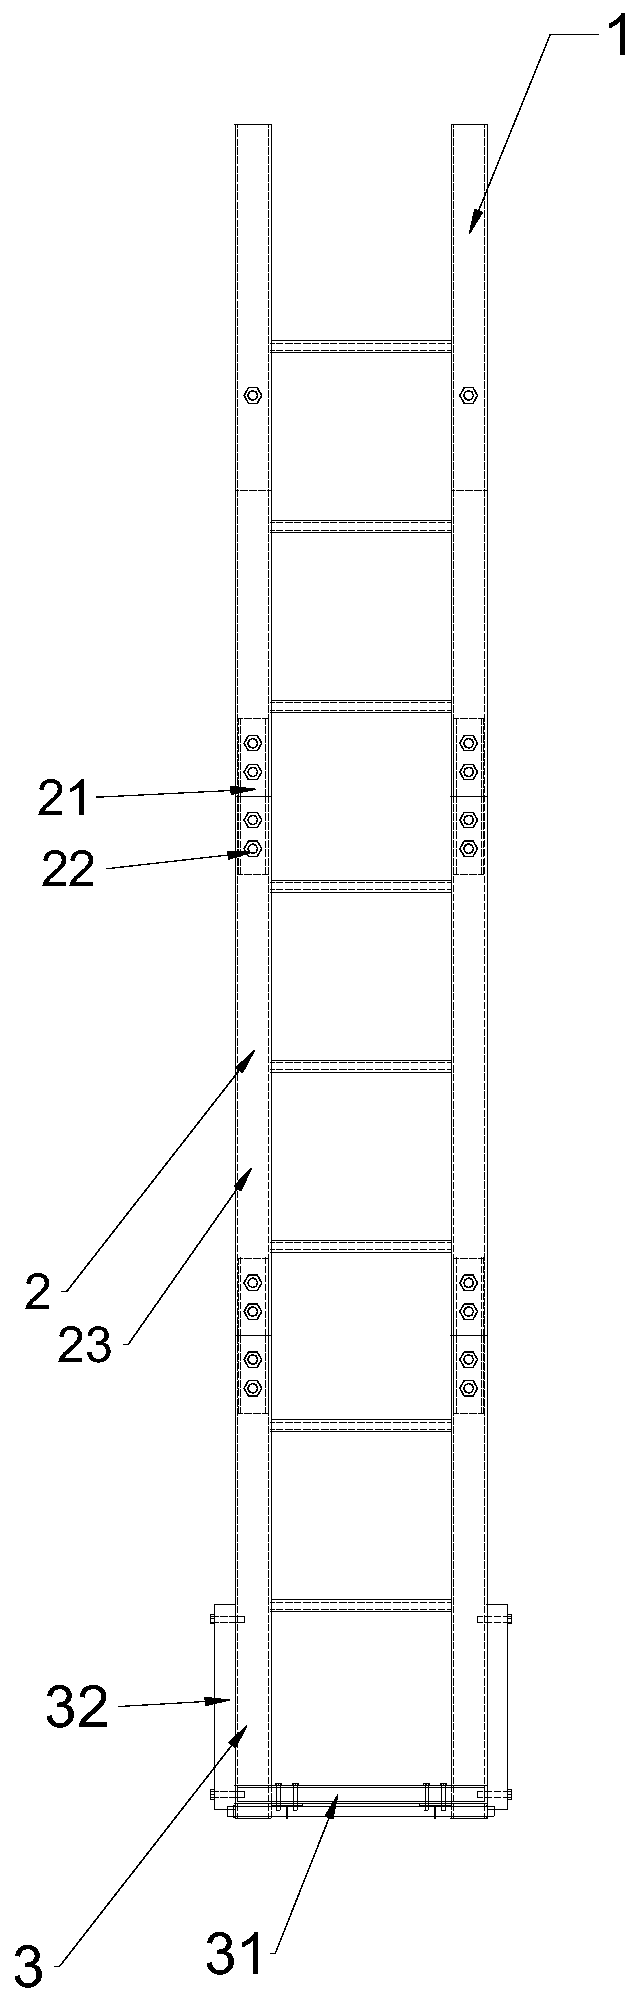 Portable bridge detecting hanging-ladder